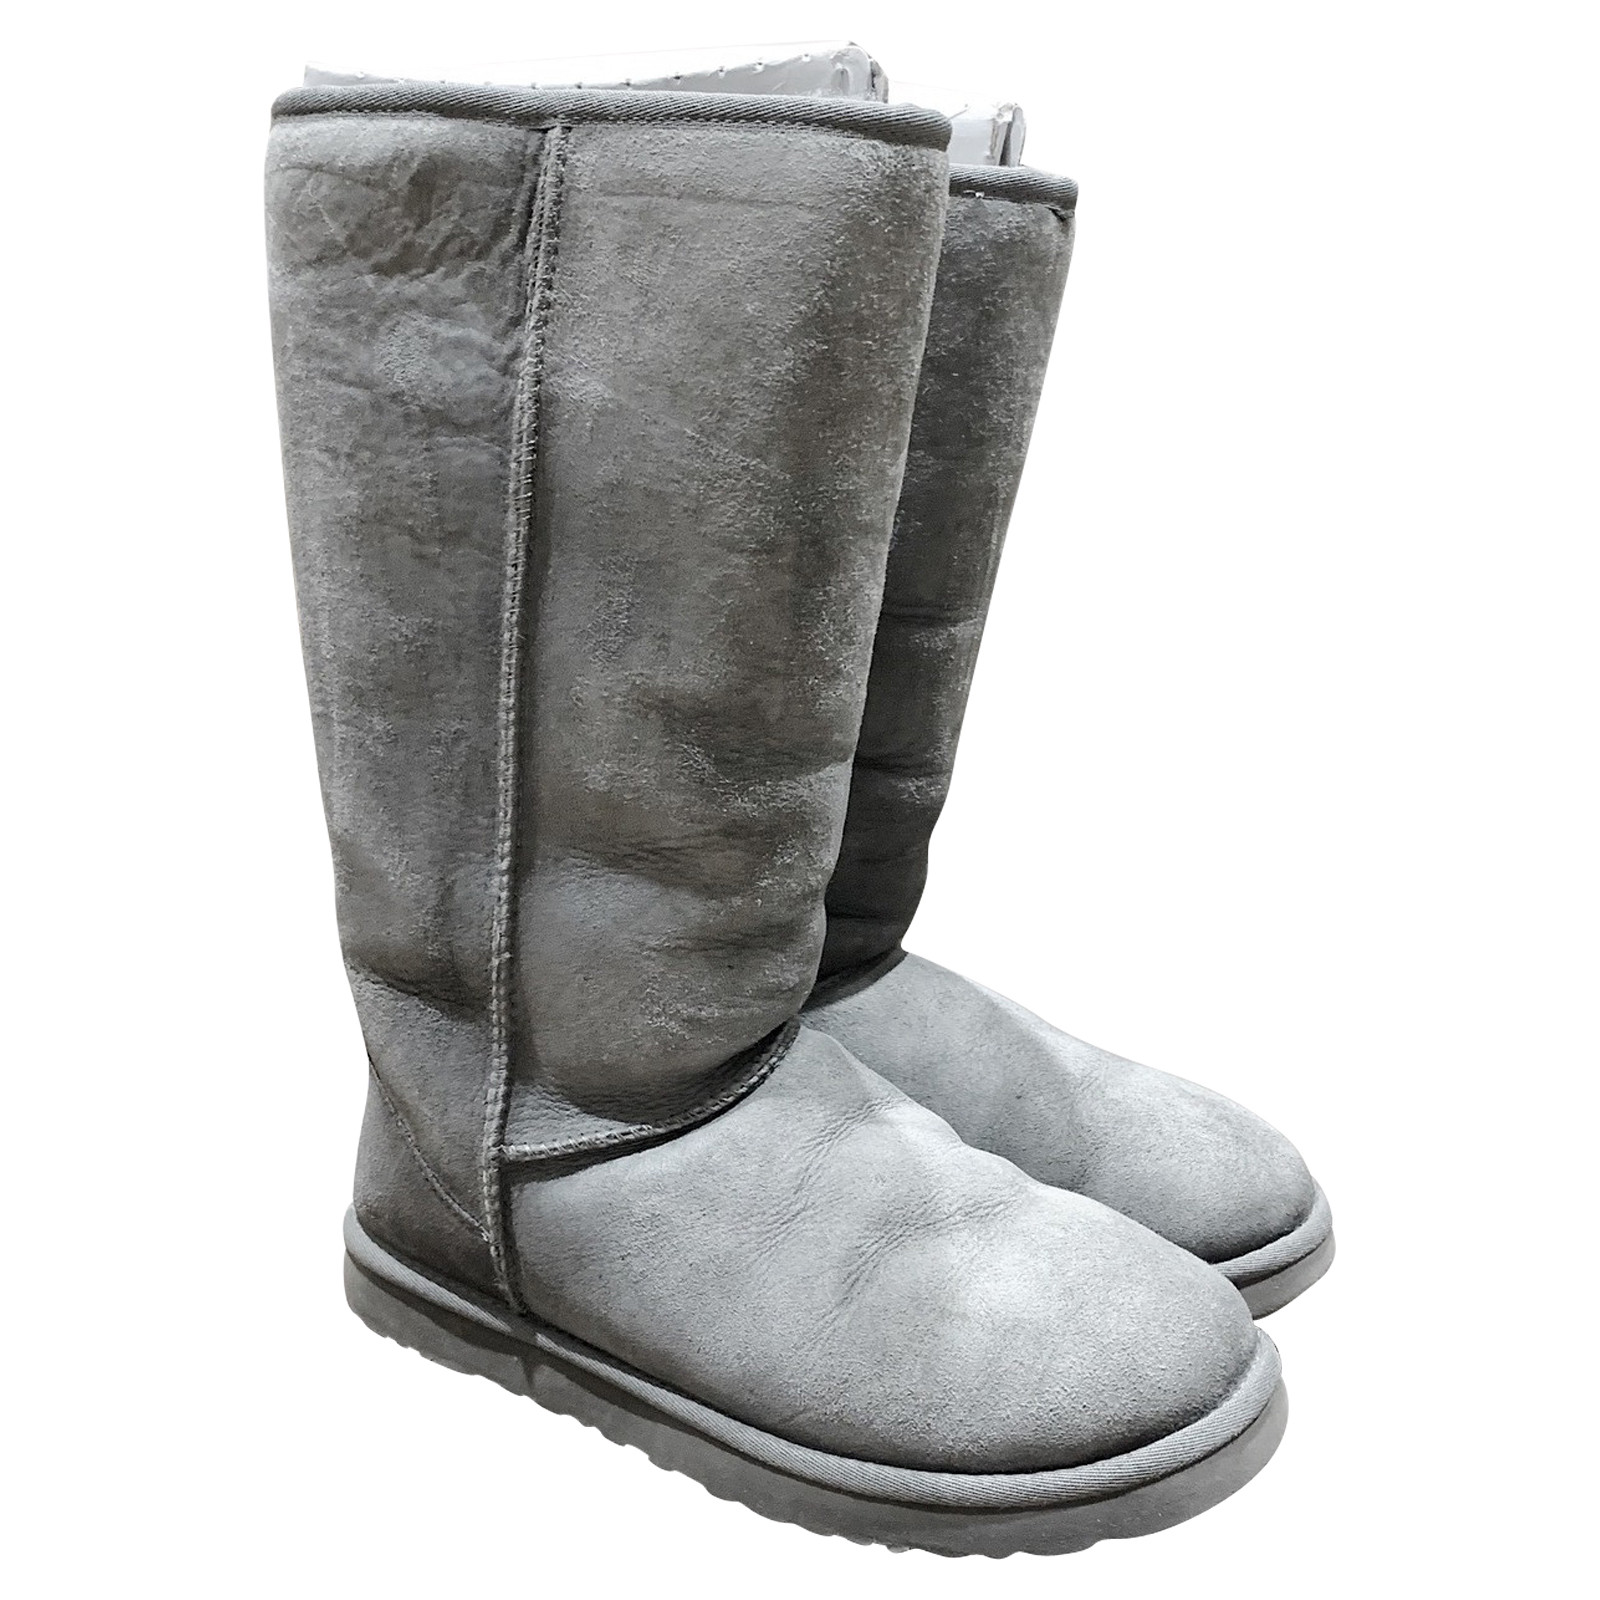 Ugg Australia Stiefel aus Leder in Grau - Second Hand Ugg Australia Stiefel  aus Leder in Grau gebraucht kaufen für 130€ (7216892)